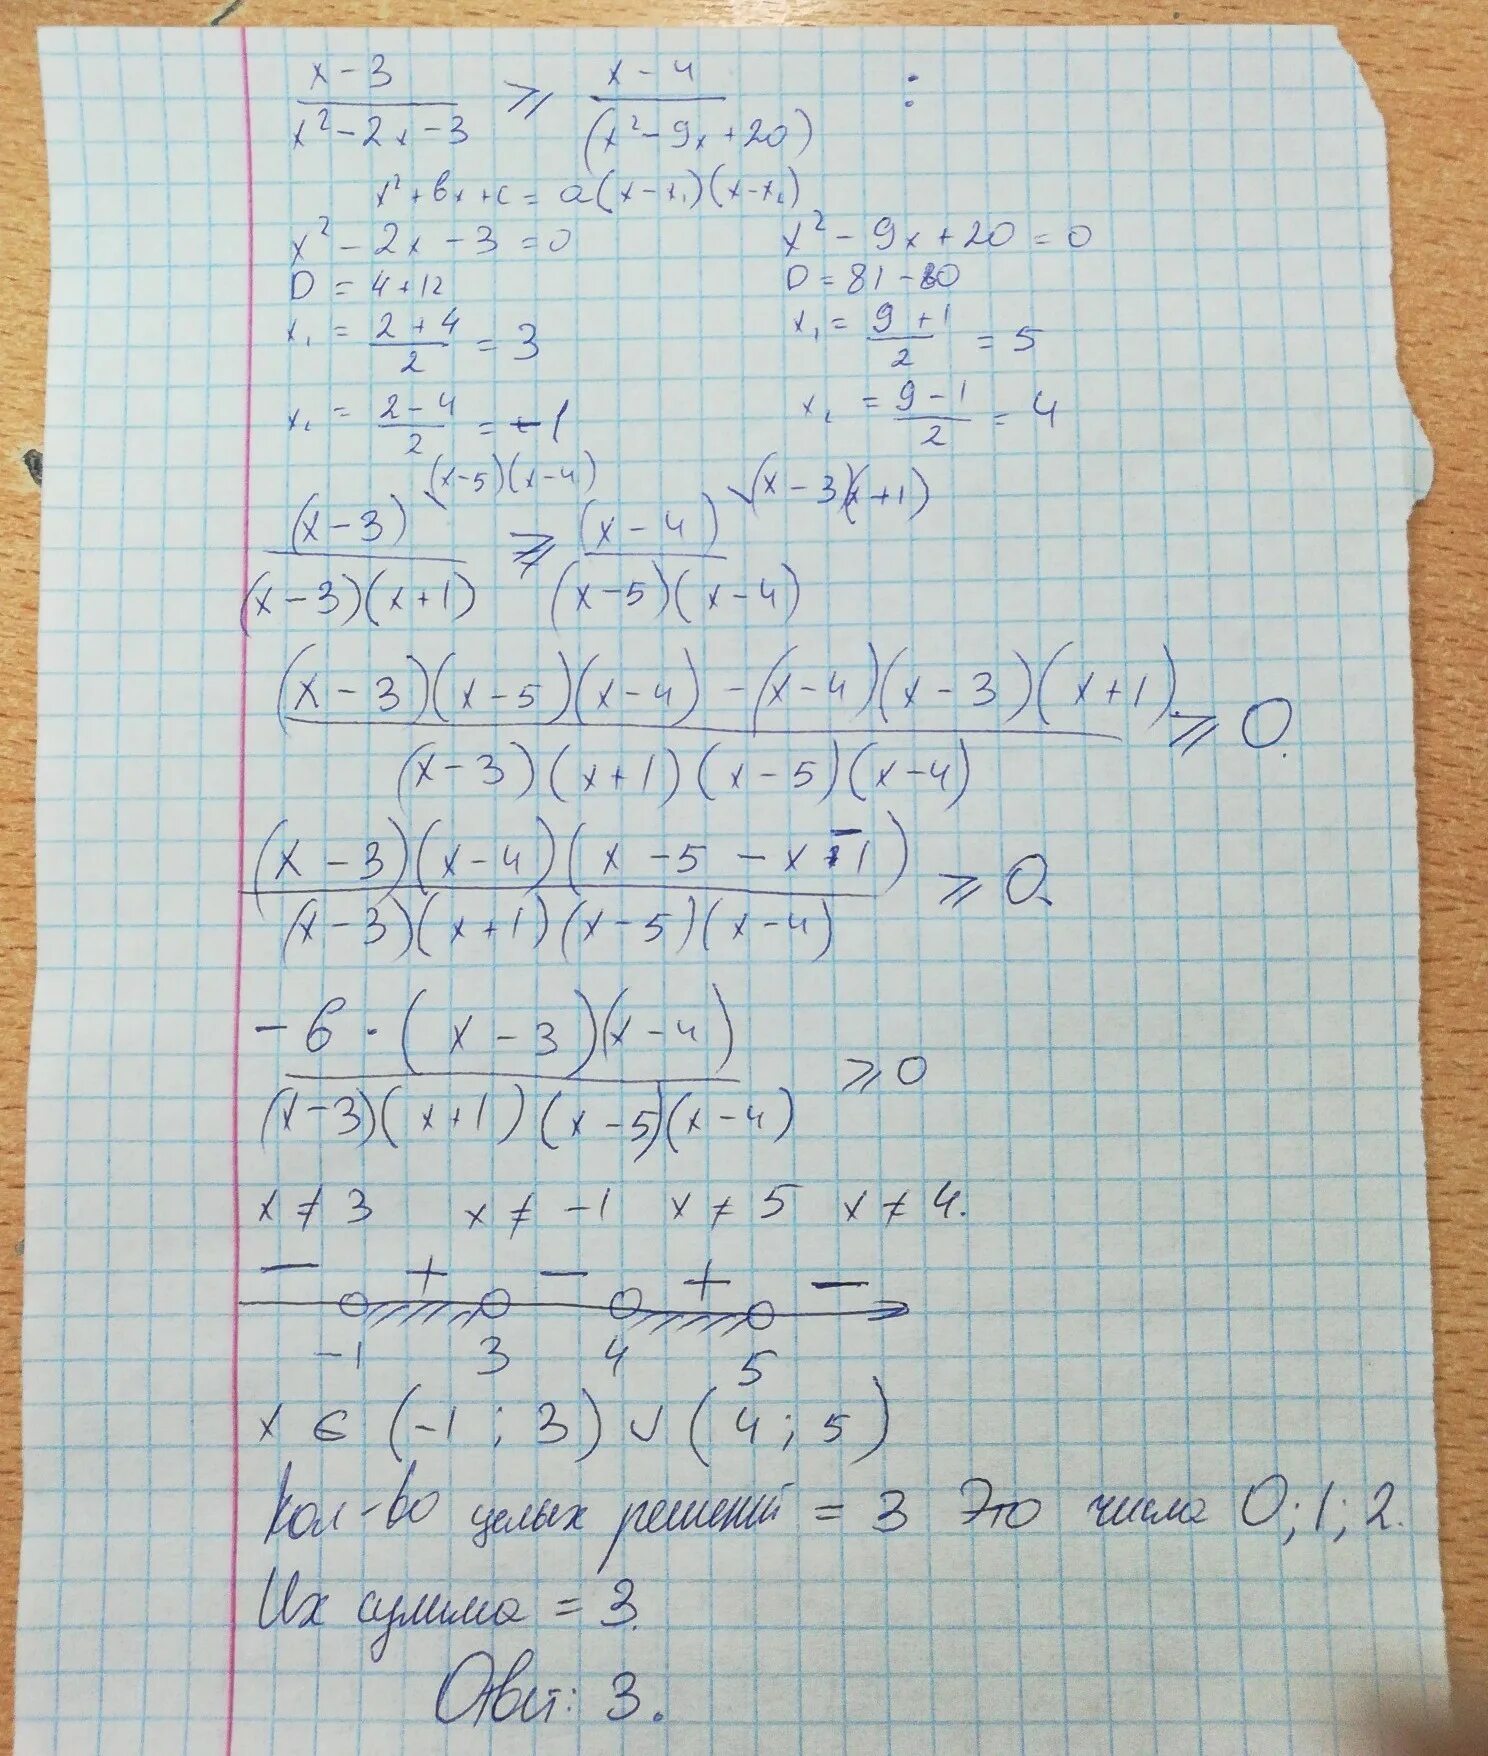 8x x 20 6x. (X+1)4(X+2)3(X+3)2(X+4)≤0. -3x+2 11-4(2x-2) вариант 1. Вариант 1 3+y=x-3 x^2+(y+6)^2=9. Б) 4х2+4x-3<0.